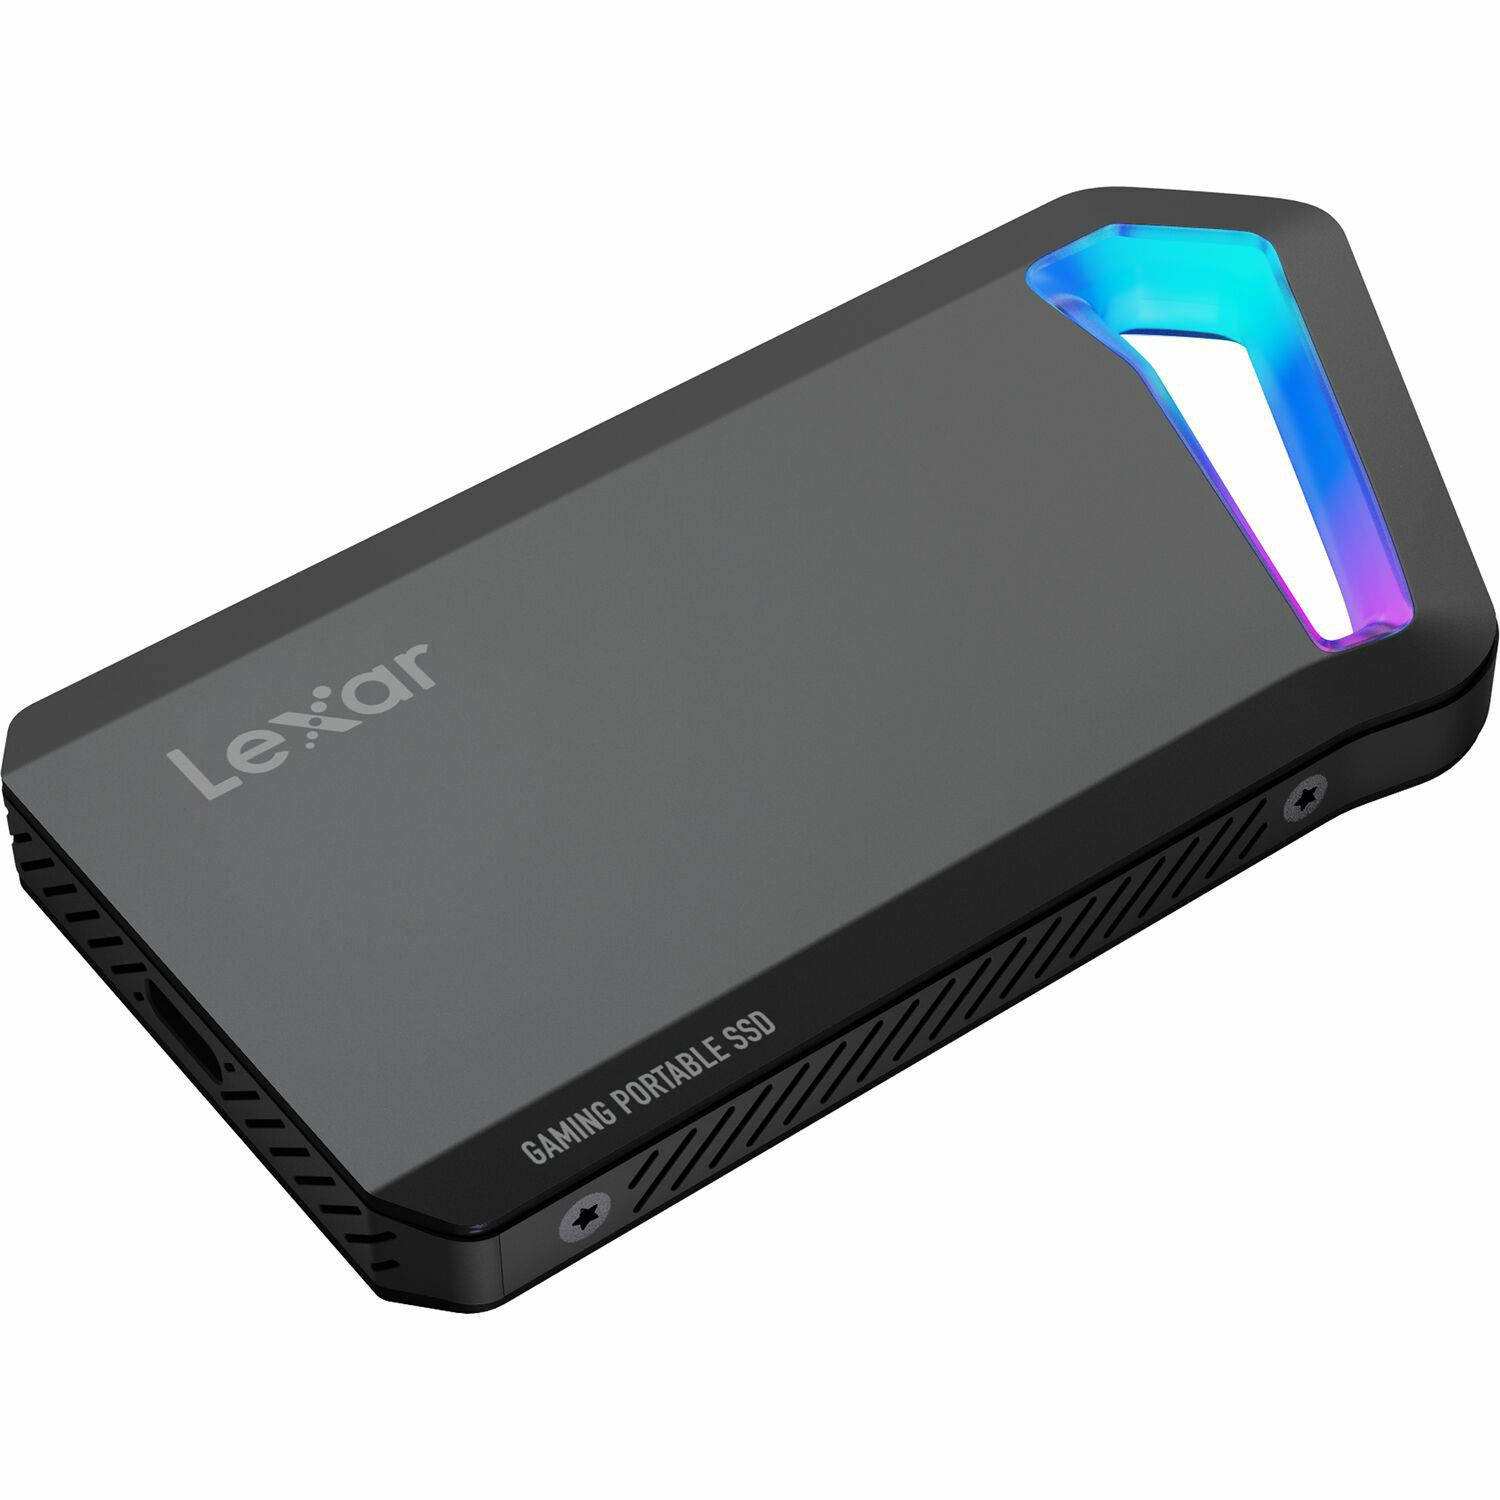 Lexar External Portable SSD 1TB 2100MB/s 1900MB/s USB 3.2 Gen2.2 (LSL660X001T-RNNNG)